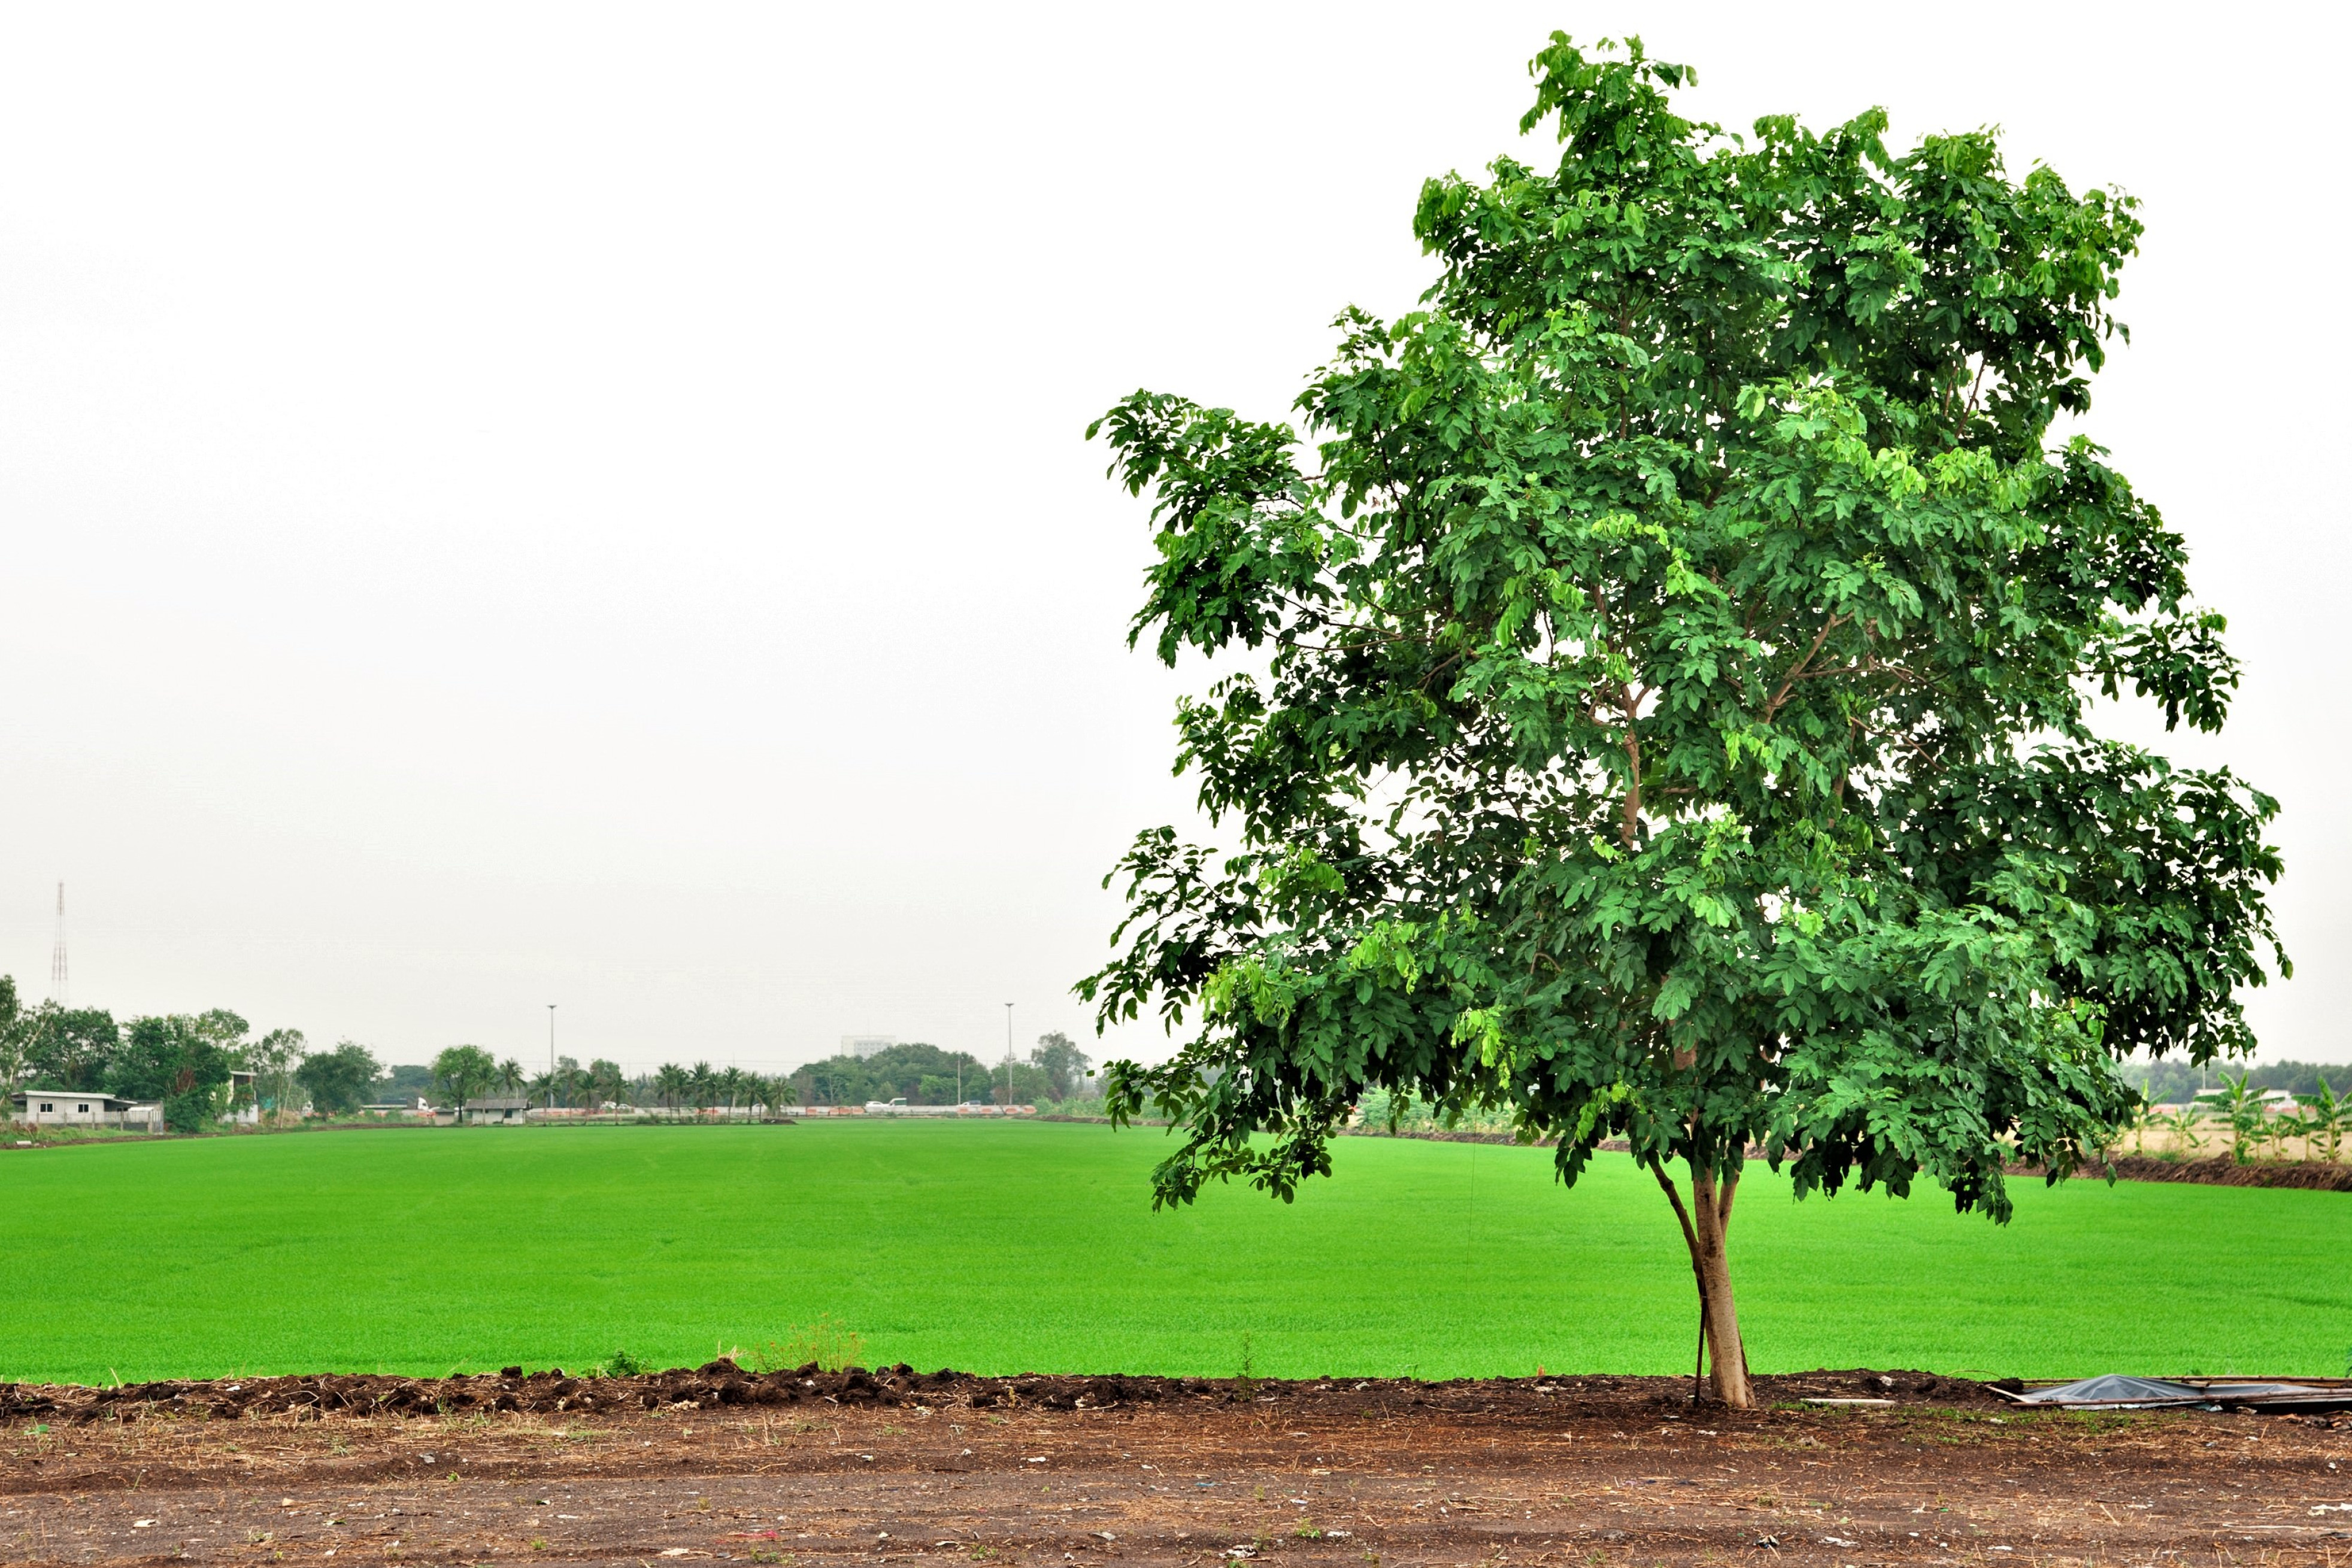 Et træ ses ved siden af en landbrugsmark